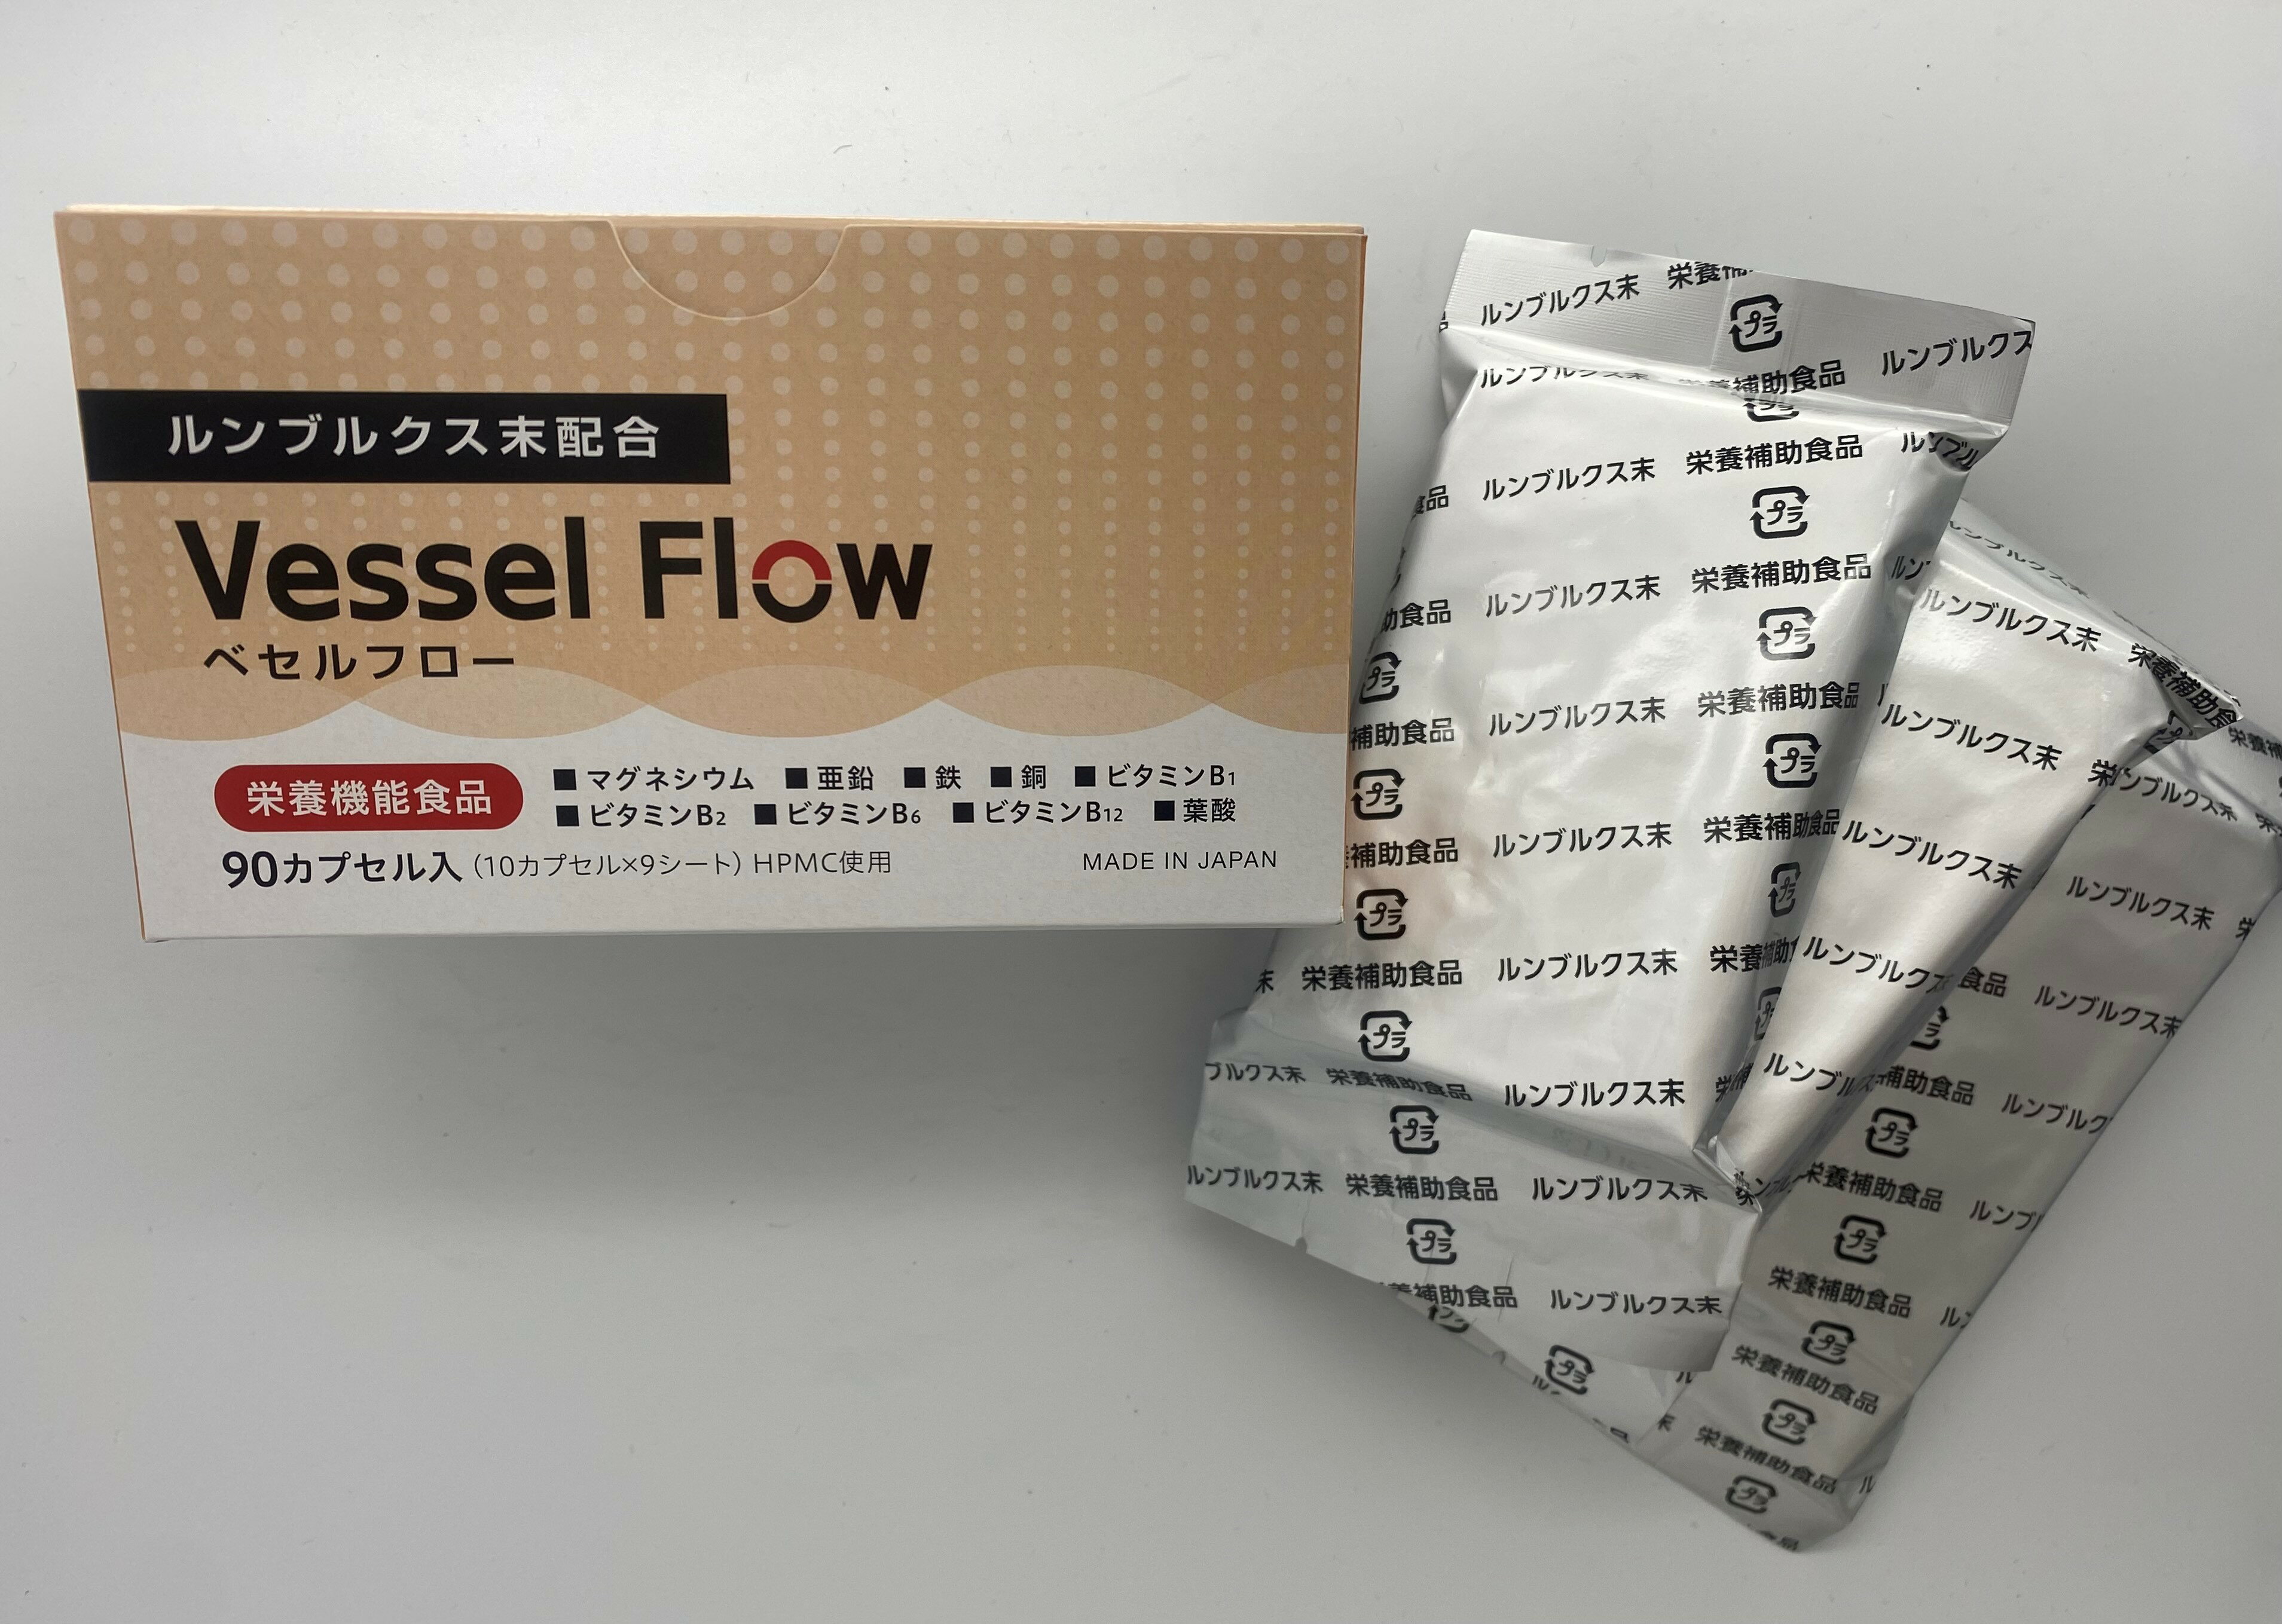 ミミズ酵素 サプリメント Vessel Flow べセルフロー 90カプセル入り 疲労回復 カプセル小粒 健康食品